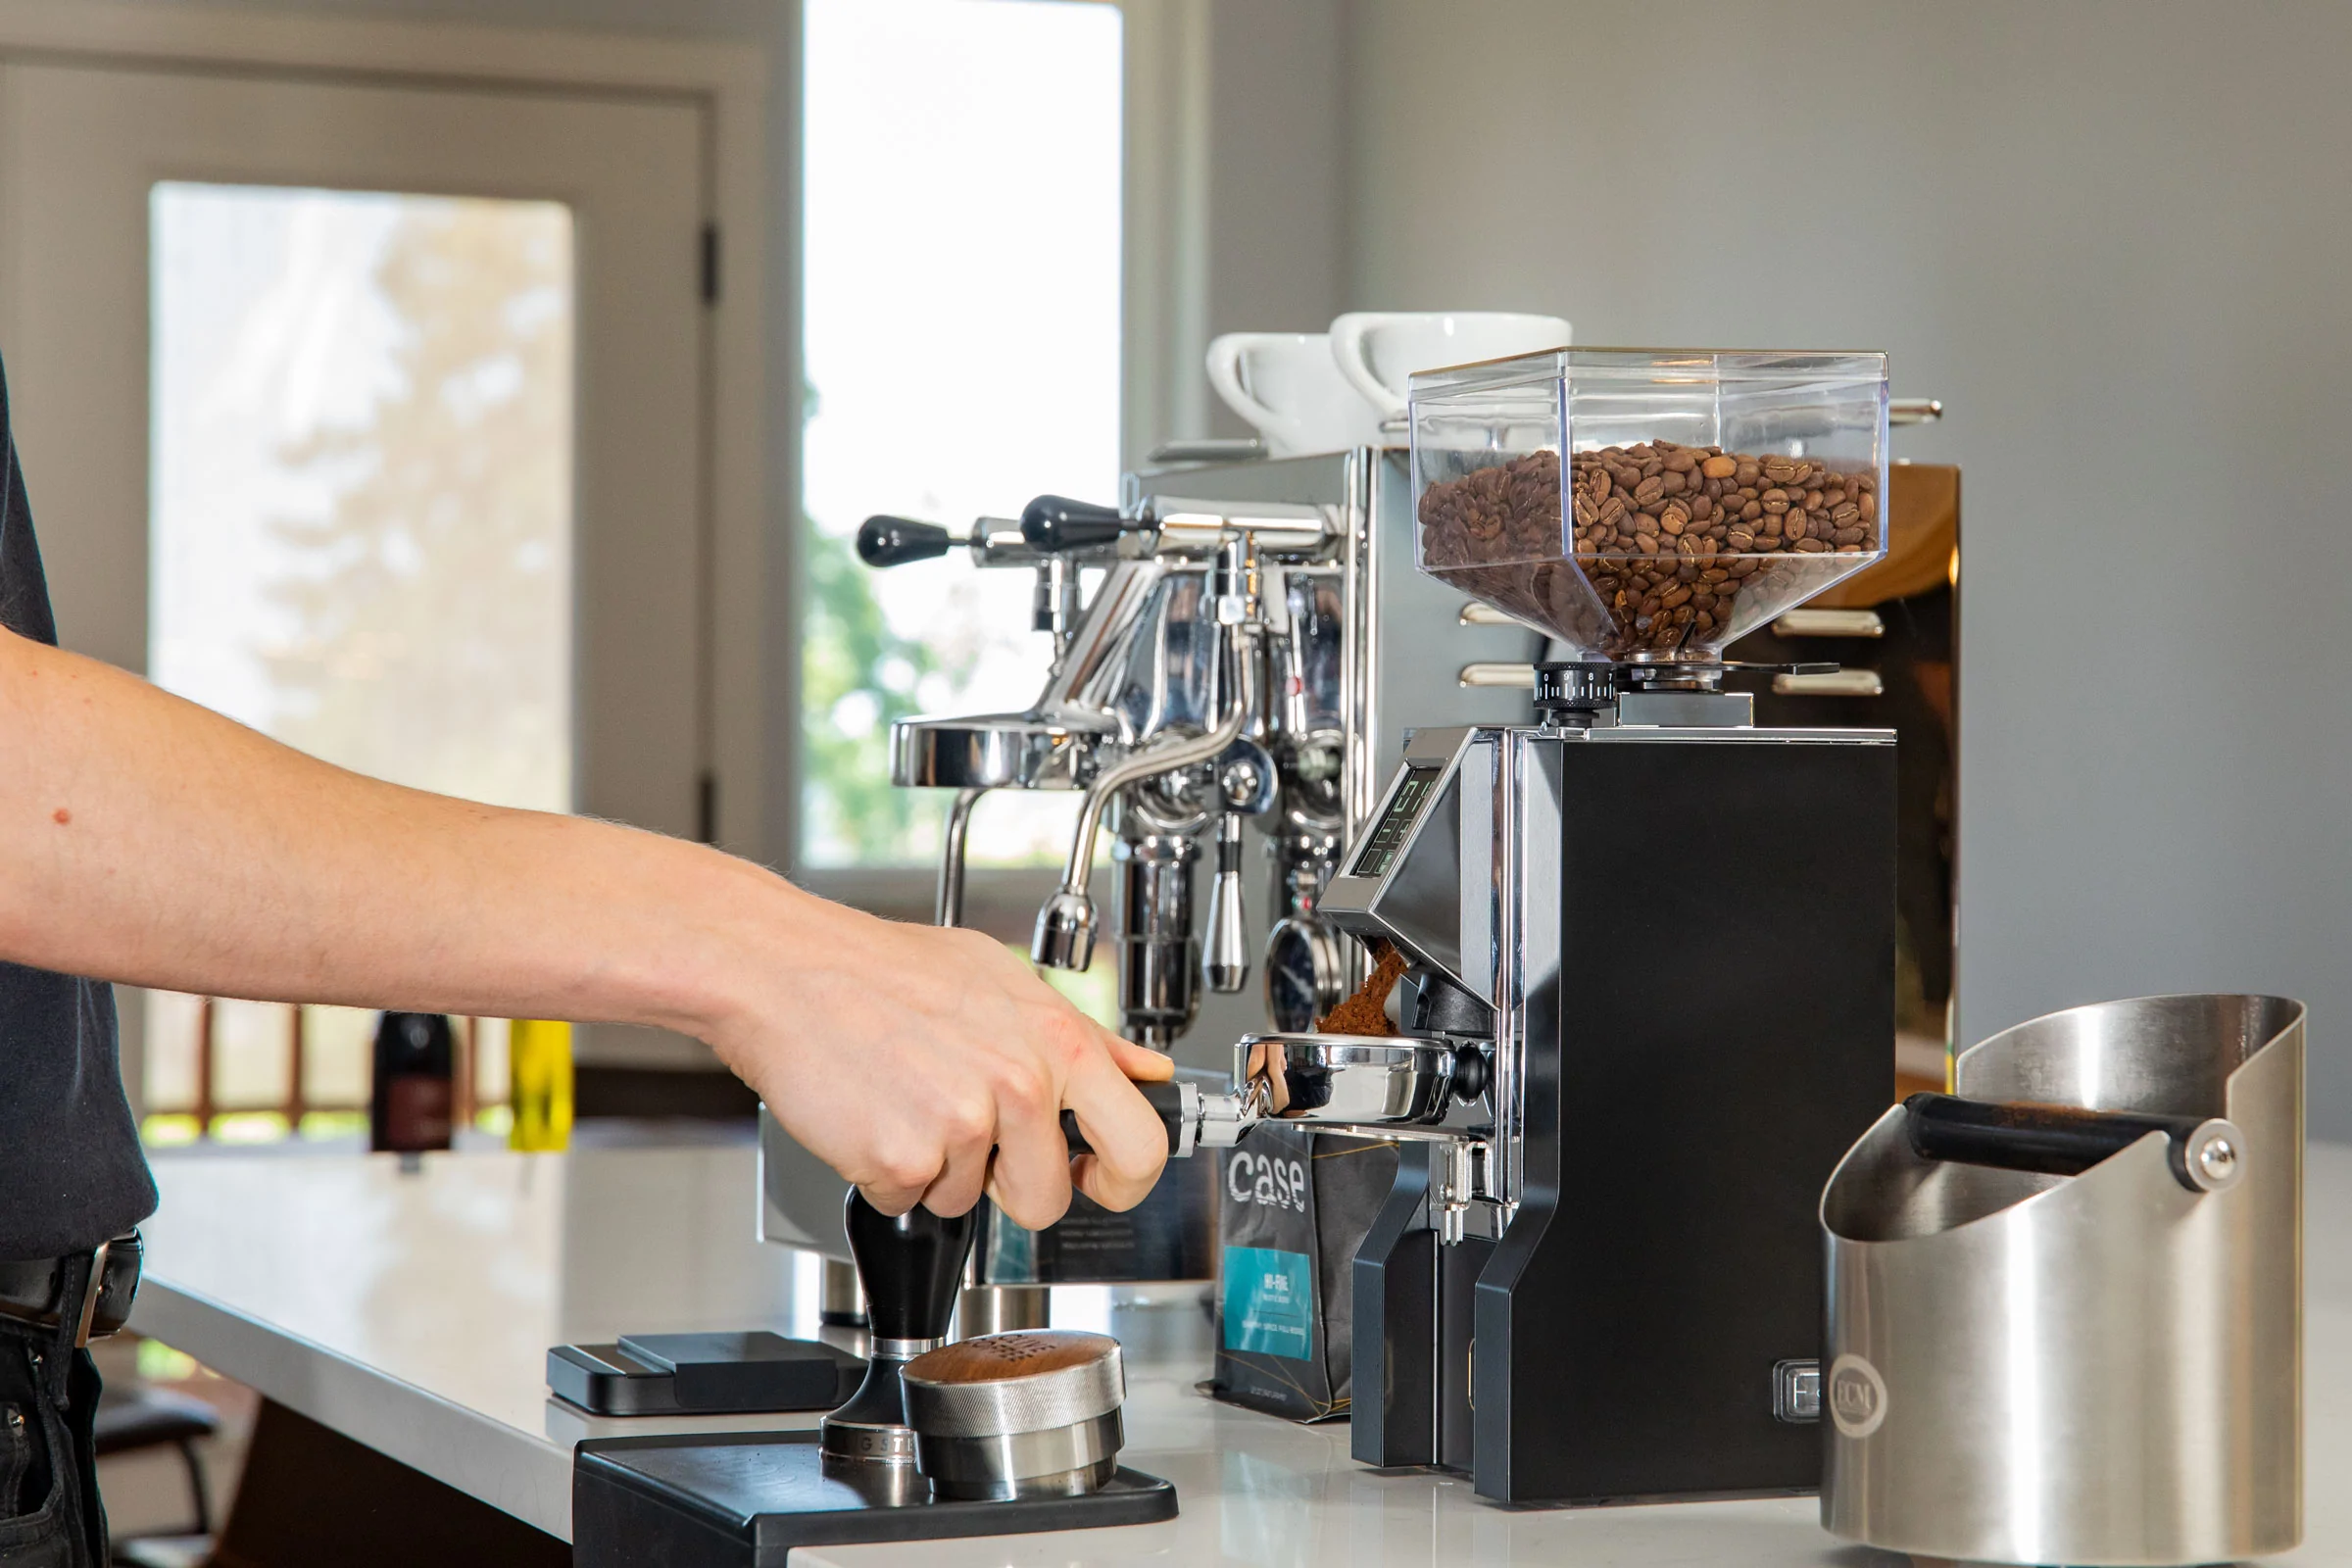 Benefits of Using Izzo Coffee Machines